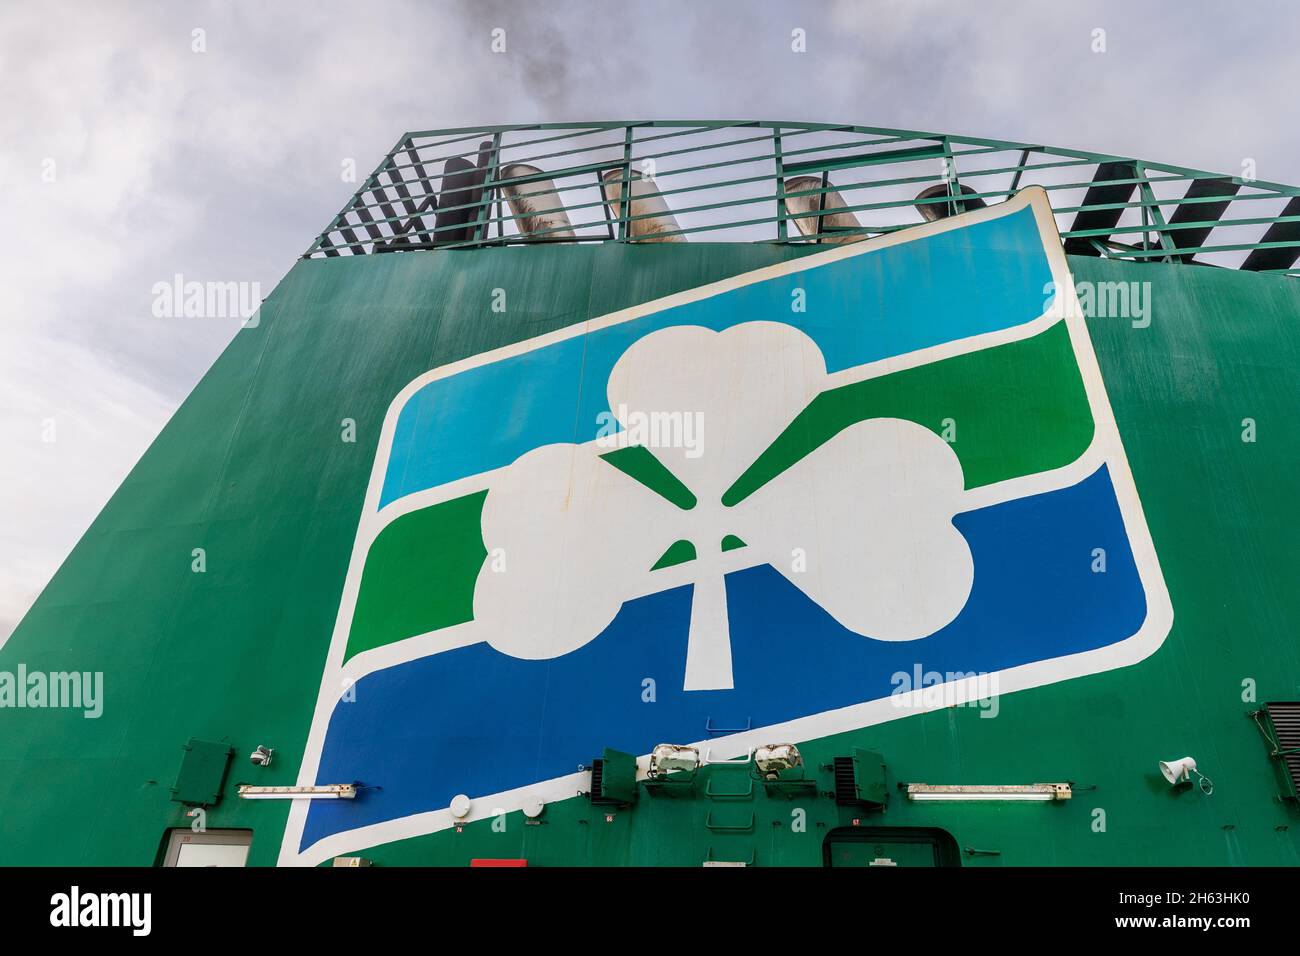 Irish Ferries logo a bordo del suo traghetto auto 'Ulysses'. Foto Stock